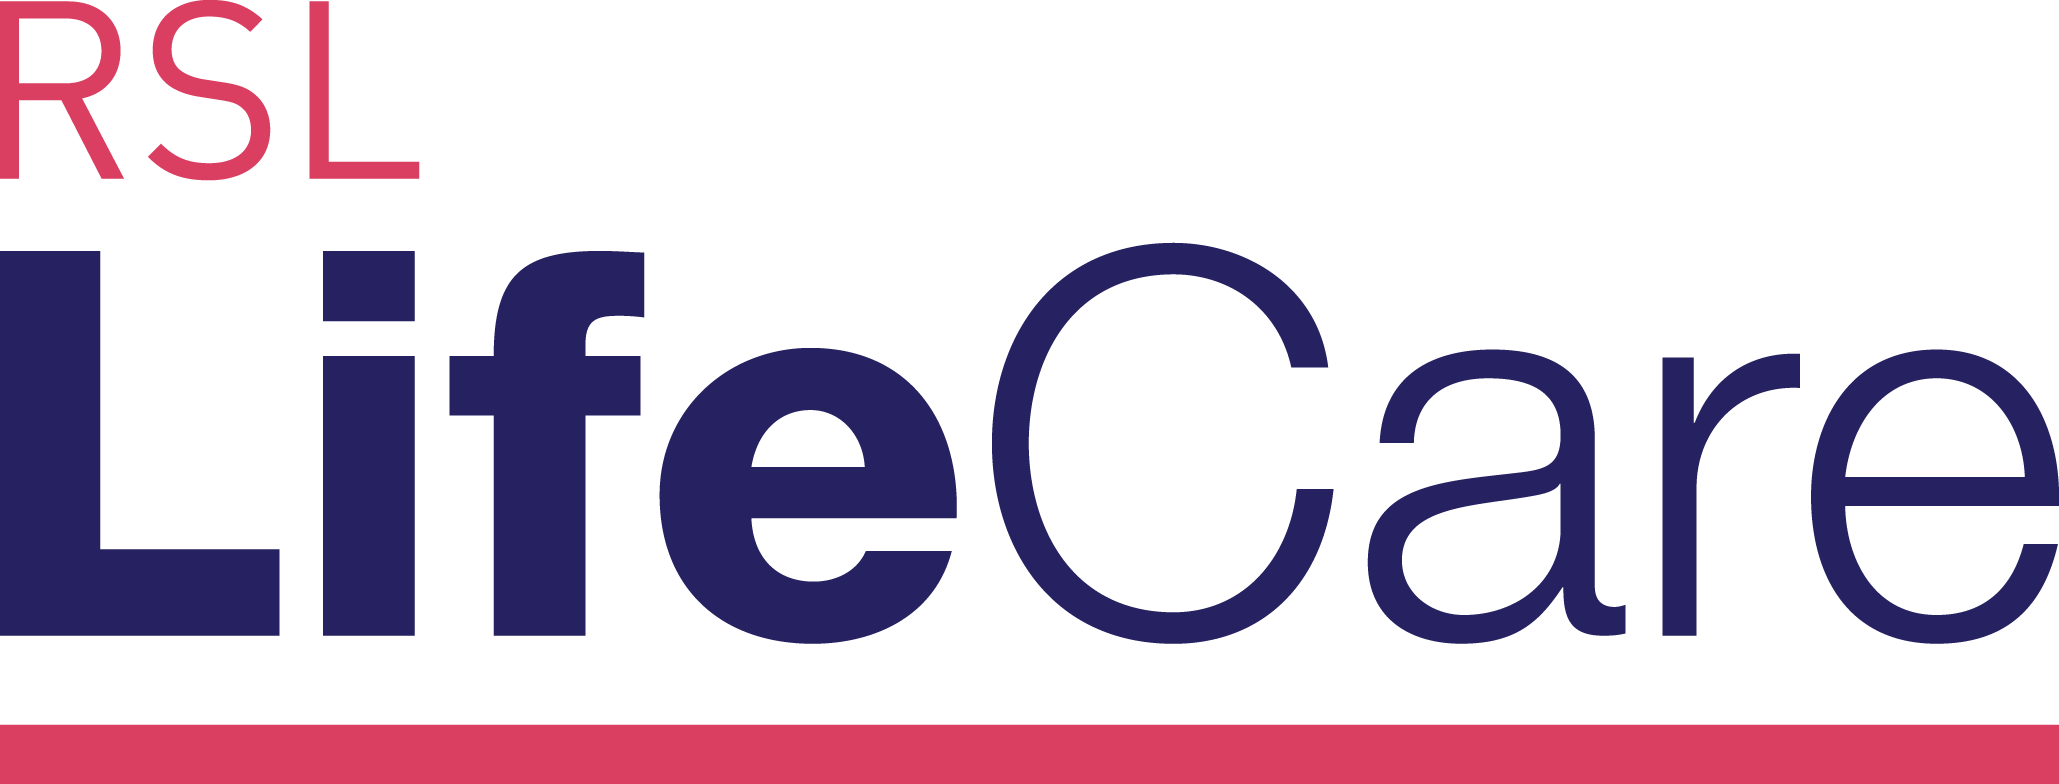 RSL LifeCare William Beech Gardens logo